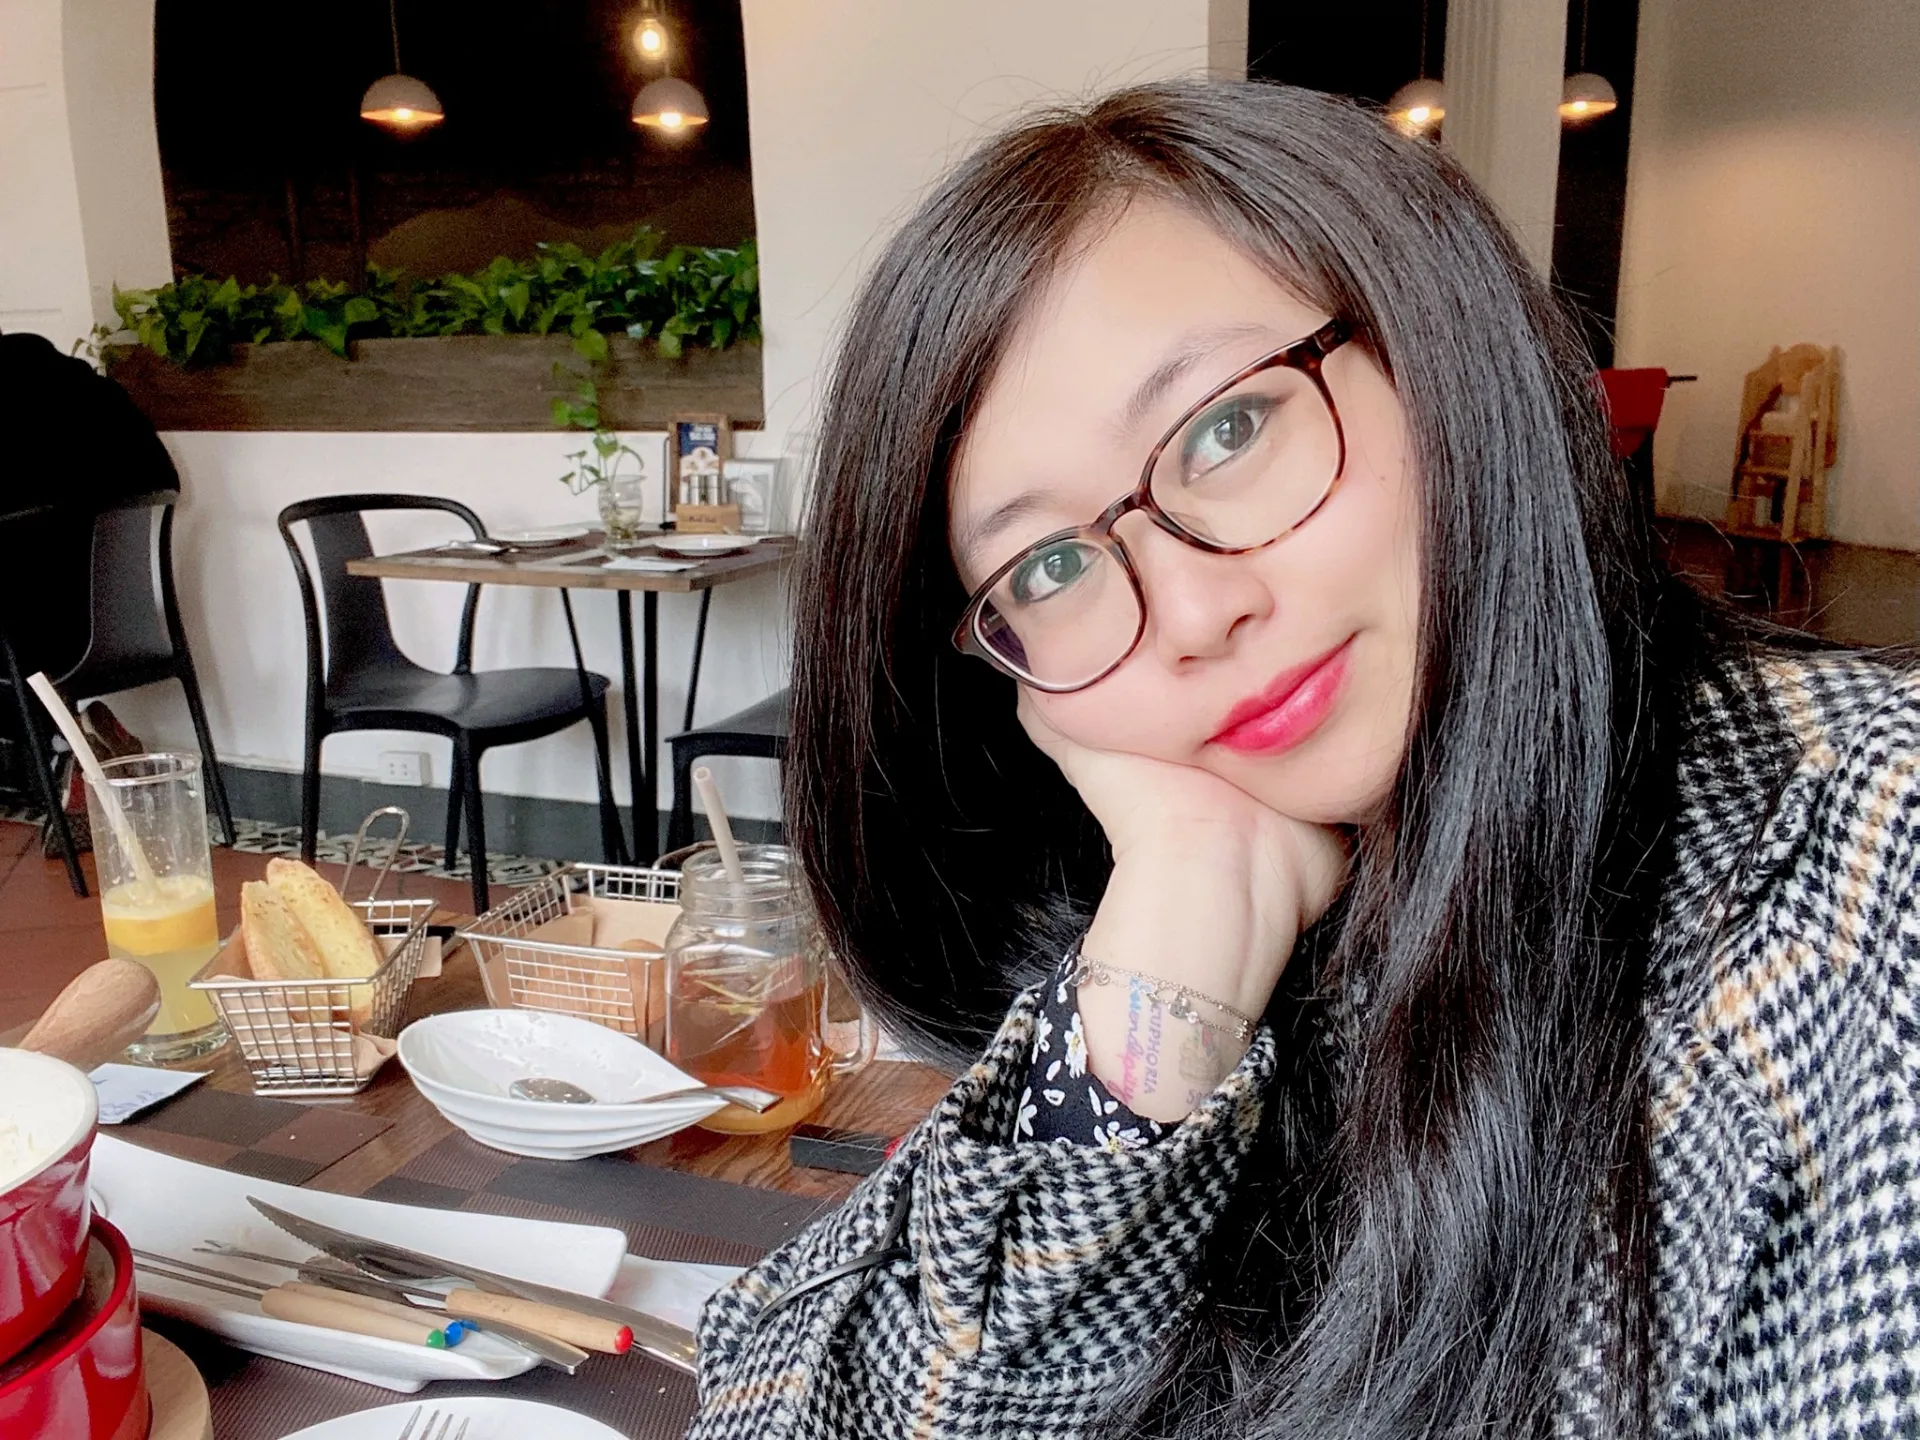 Tài khoản FB Heina Phuong đã chia sẻ công thức làm hàu sữa nướng phomai cực đơn giản khiến cư dân mạng vô cùng thích thú